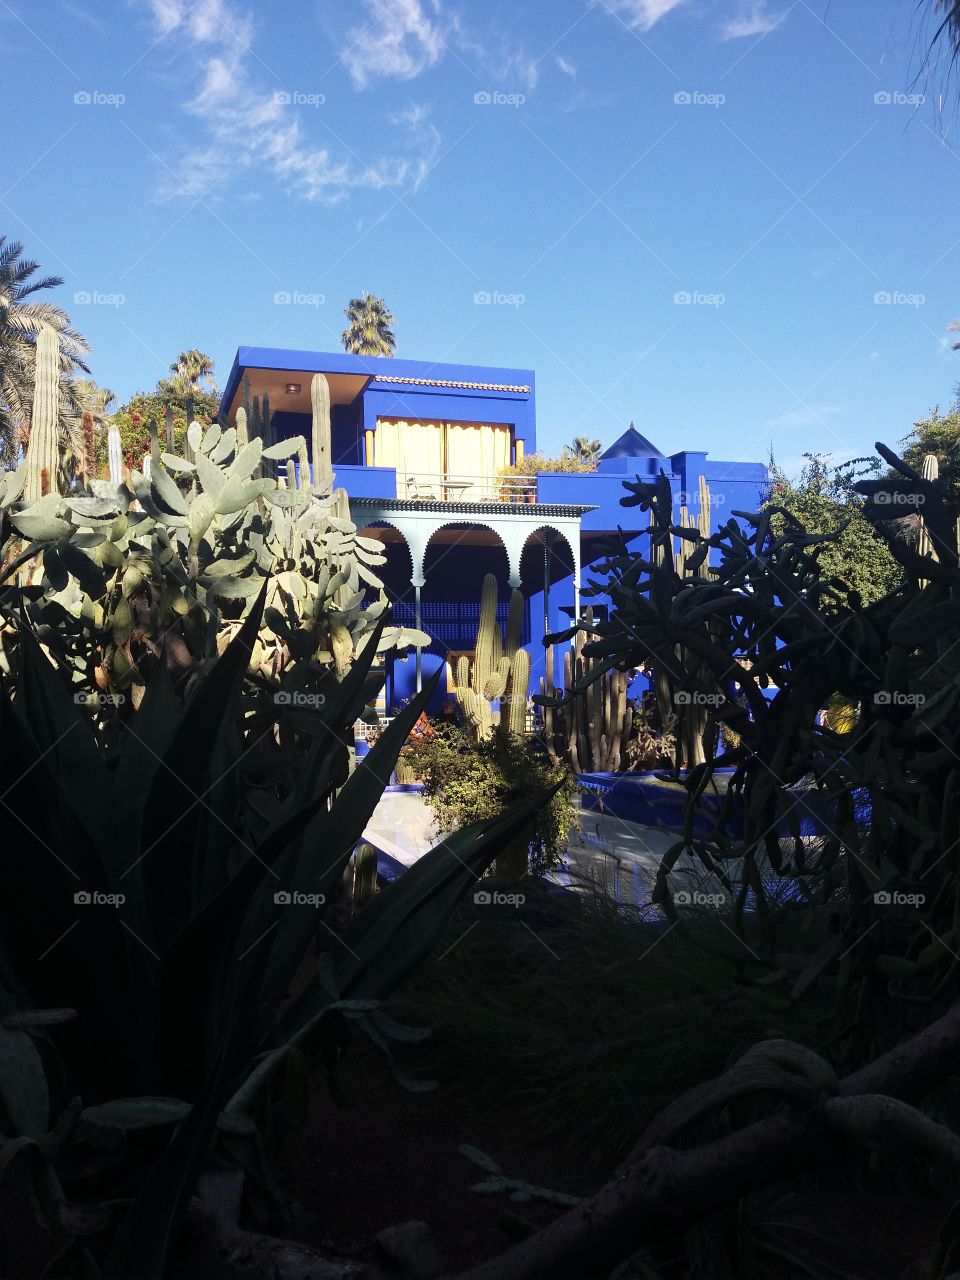 cactus jardin majorelle marrakech morocco